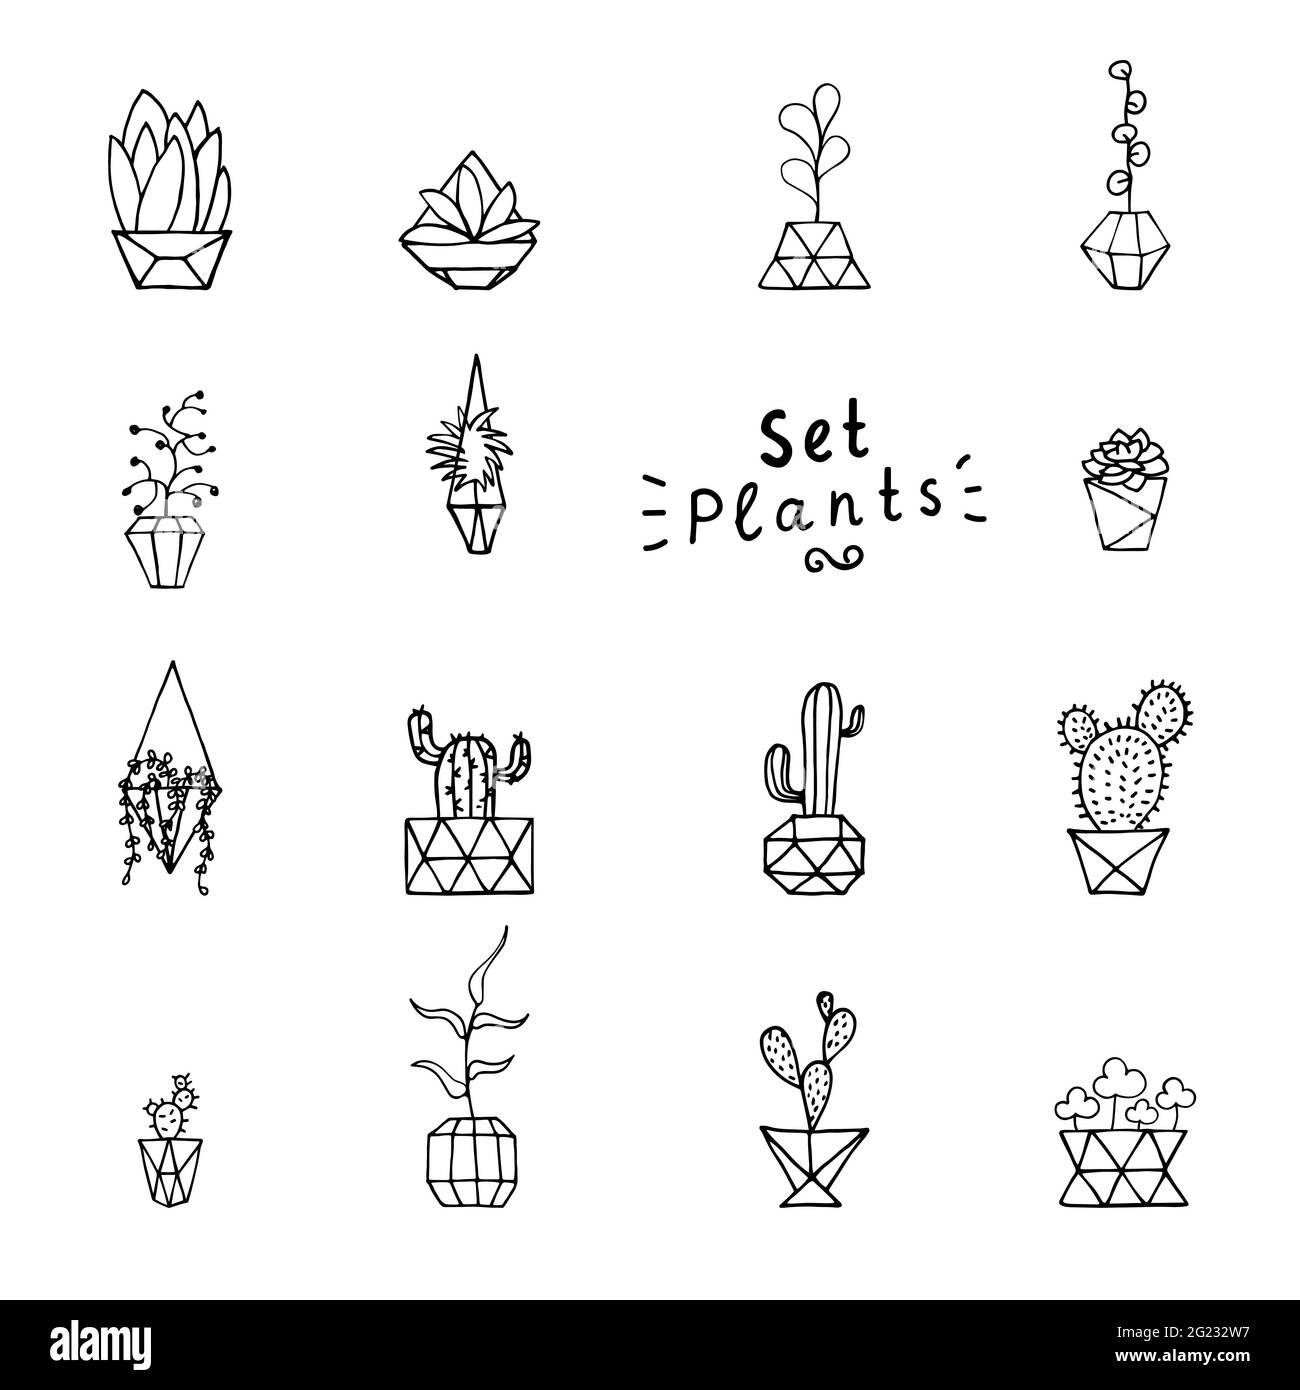 Planta de fideos en conjunto de macetas facetadas. Hojas, suculentos y cactus dibujados a mano con poly flower pot. Perfile las plantas domésticas aisladas sobre un fondo blanco. Cúb Ilustración del Vector